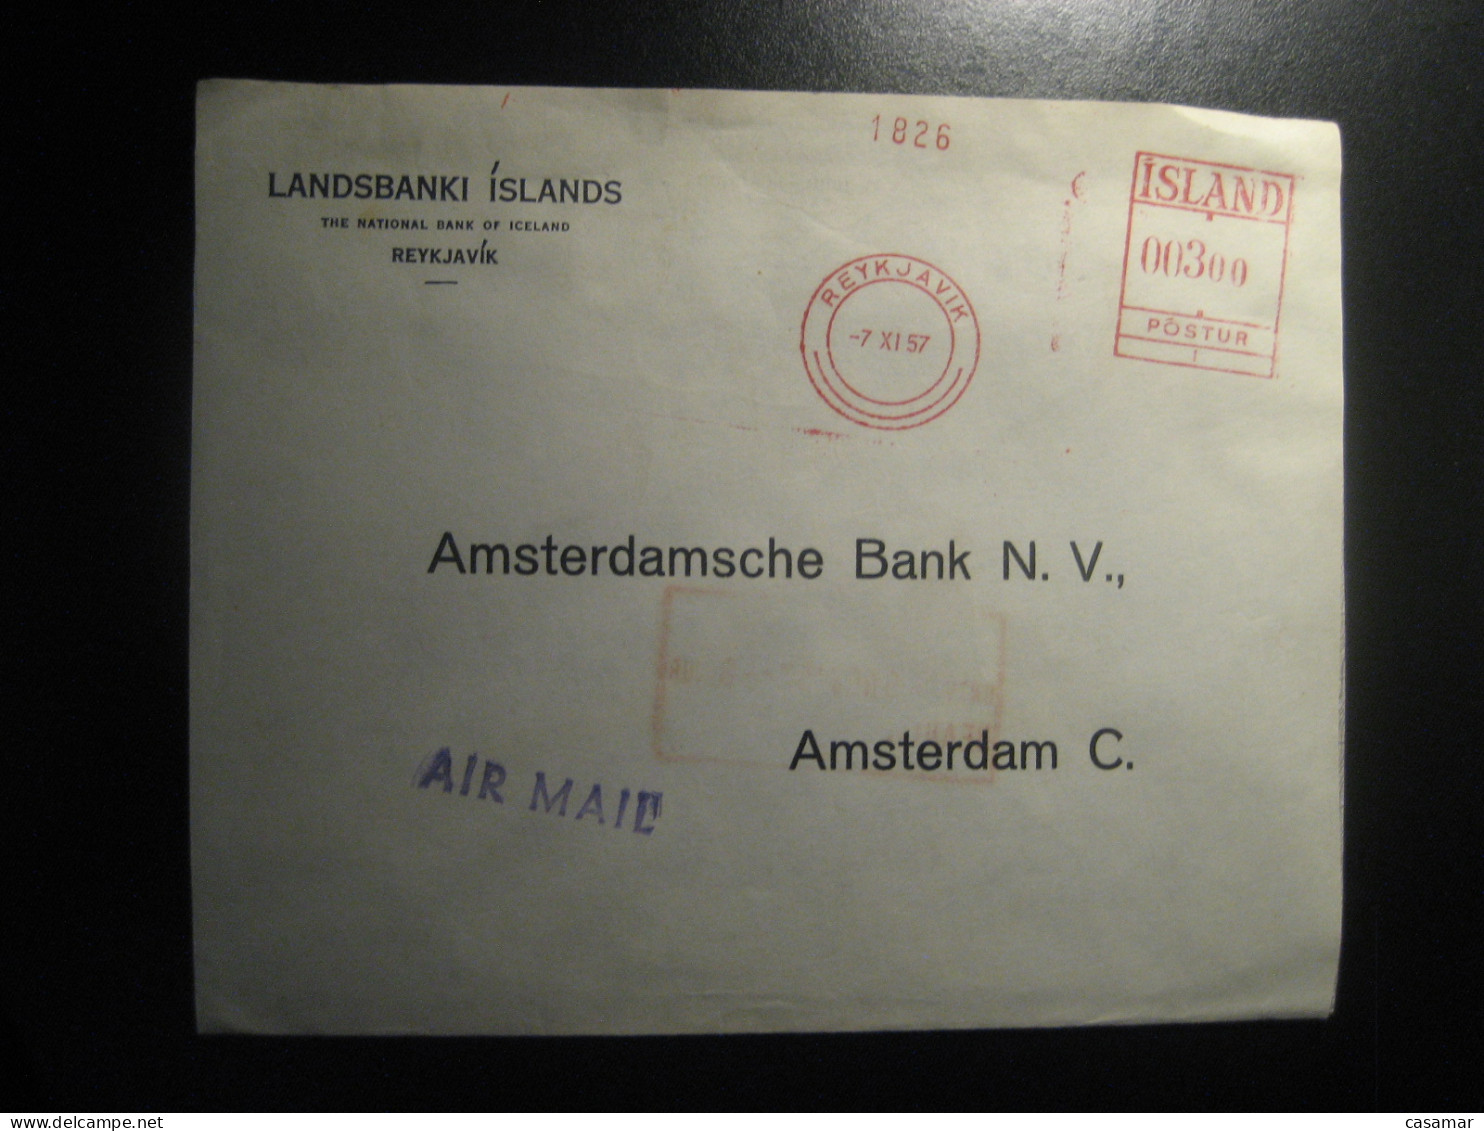 REYKJAVIK 1957 To Amsterdam Netherlands Landsbanki Islands Air Meter Mail Cancel Cover ICELAND - Storia Postale